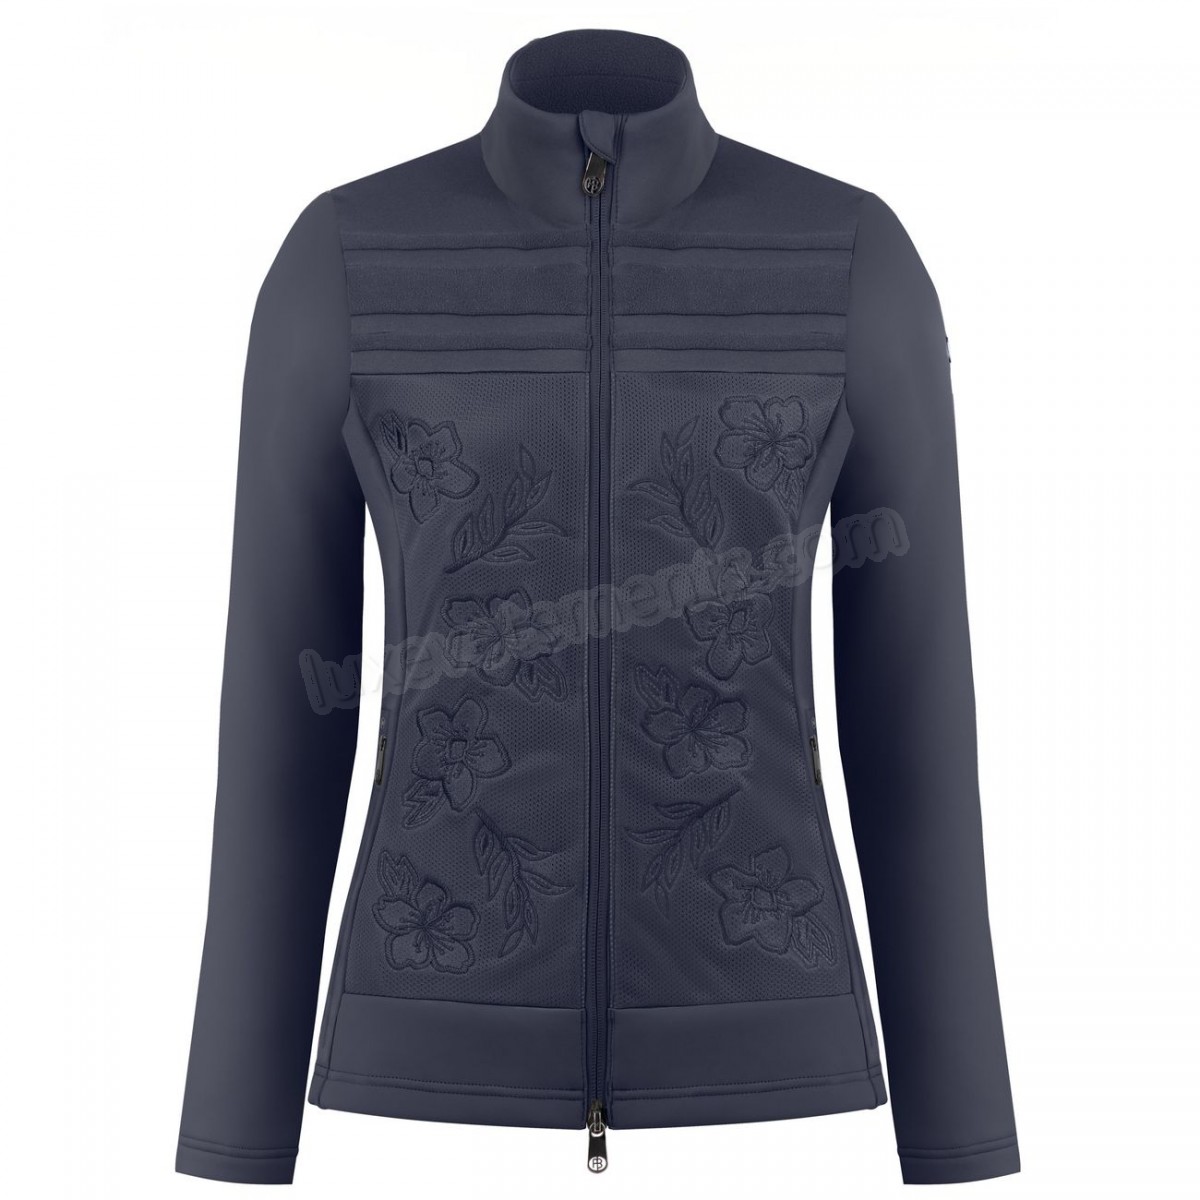 Poivre Blanc-Sports d'hiver femme POIVRE BLANC Veste Polaire Poivre Blanc Hybrid Stretch Fleece Jacket 1605 Gothic Blue 4 Femme Vente en ligne - -0